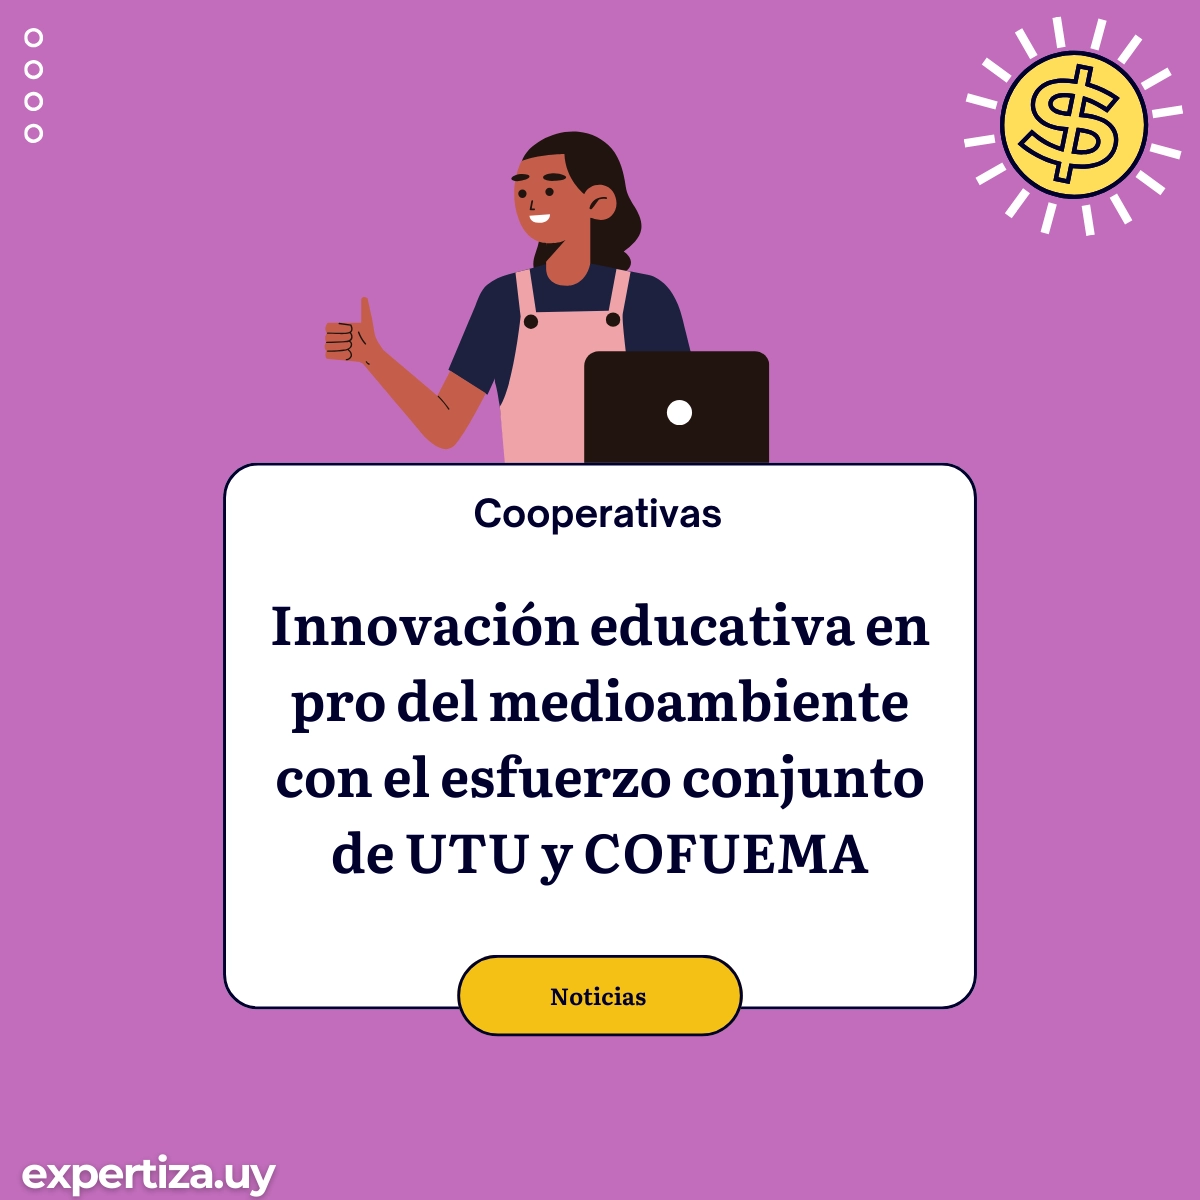 Innovación educativa en pro del medioambiente con el esfuerzo conjunto de UTU y COFUEMA.